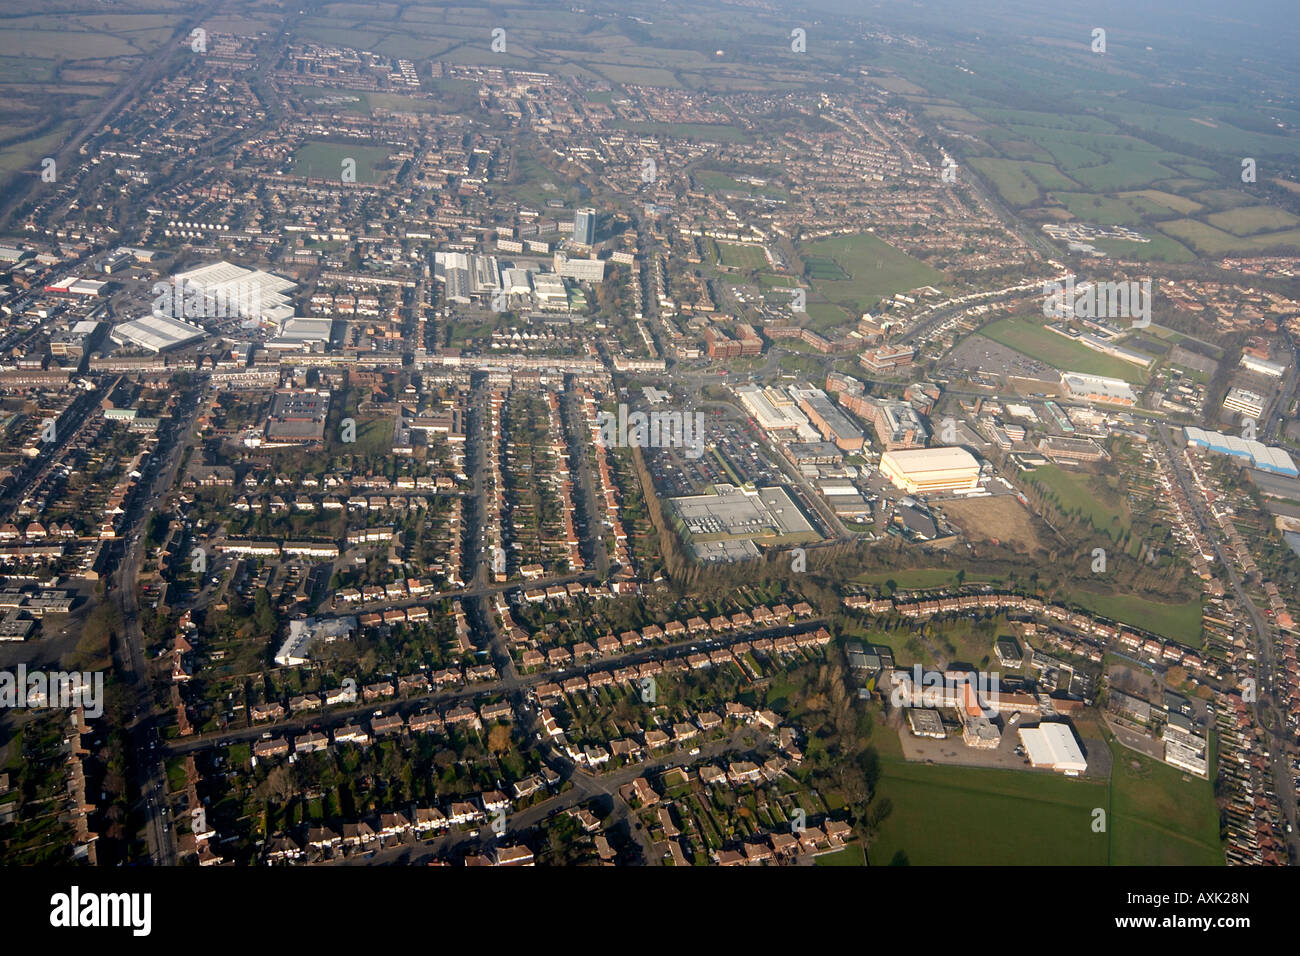 Vue aérienne oblique de haut niveau des frais généraux et des studios d'Elstree Borehamwood WD6 Londres Angleterre Royaume-Uni Janvier 2006 Banque D'Images